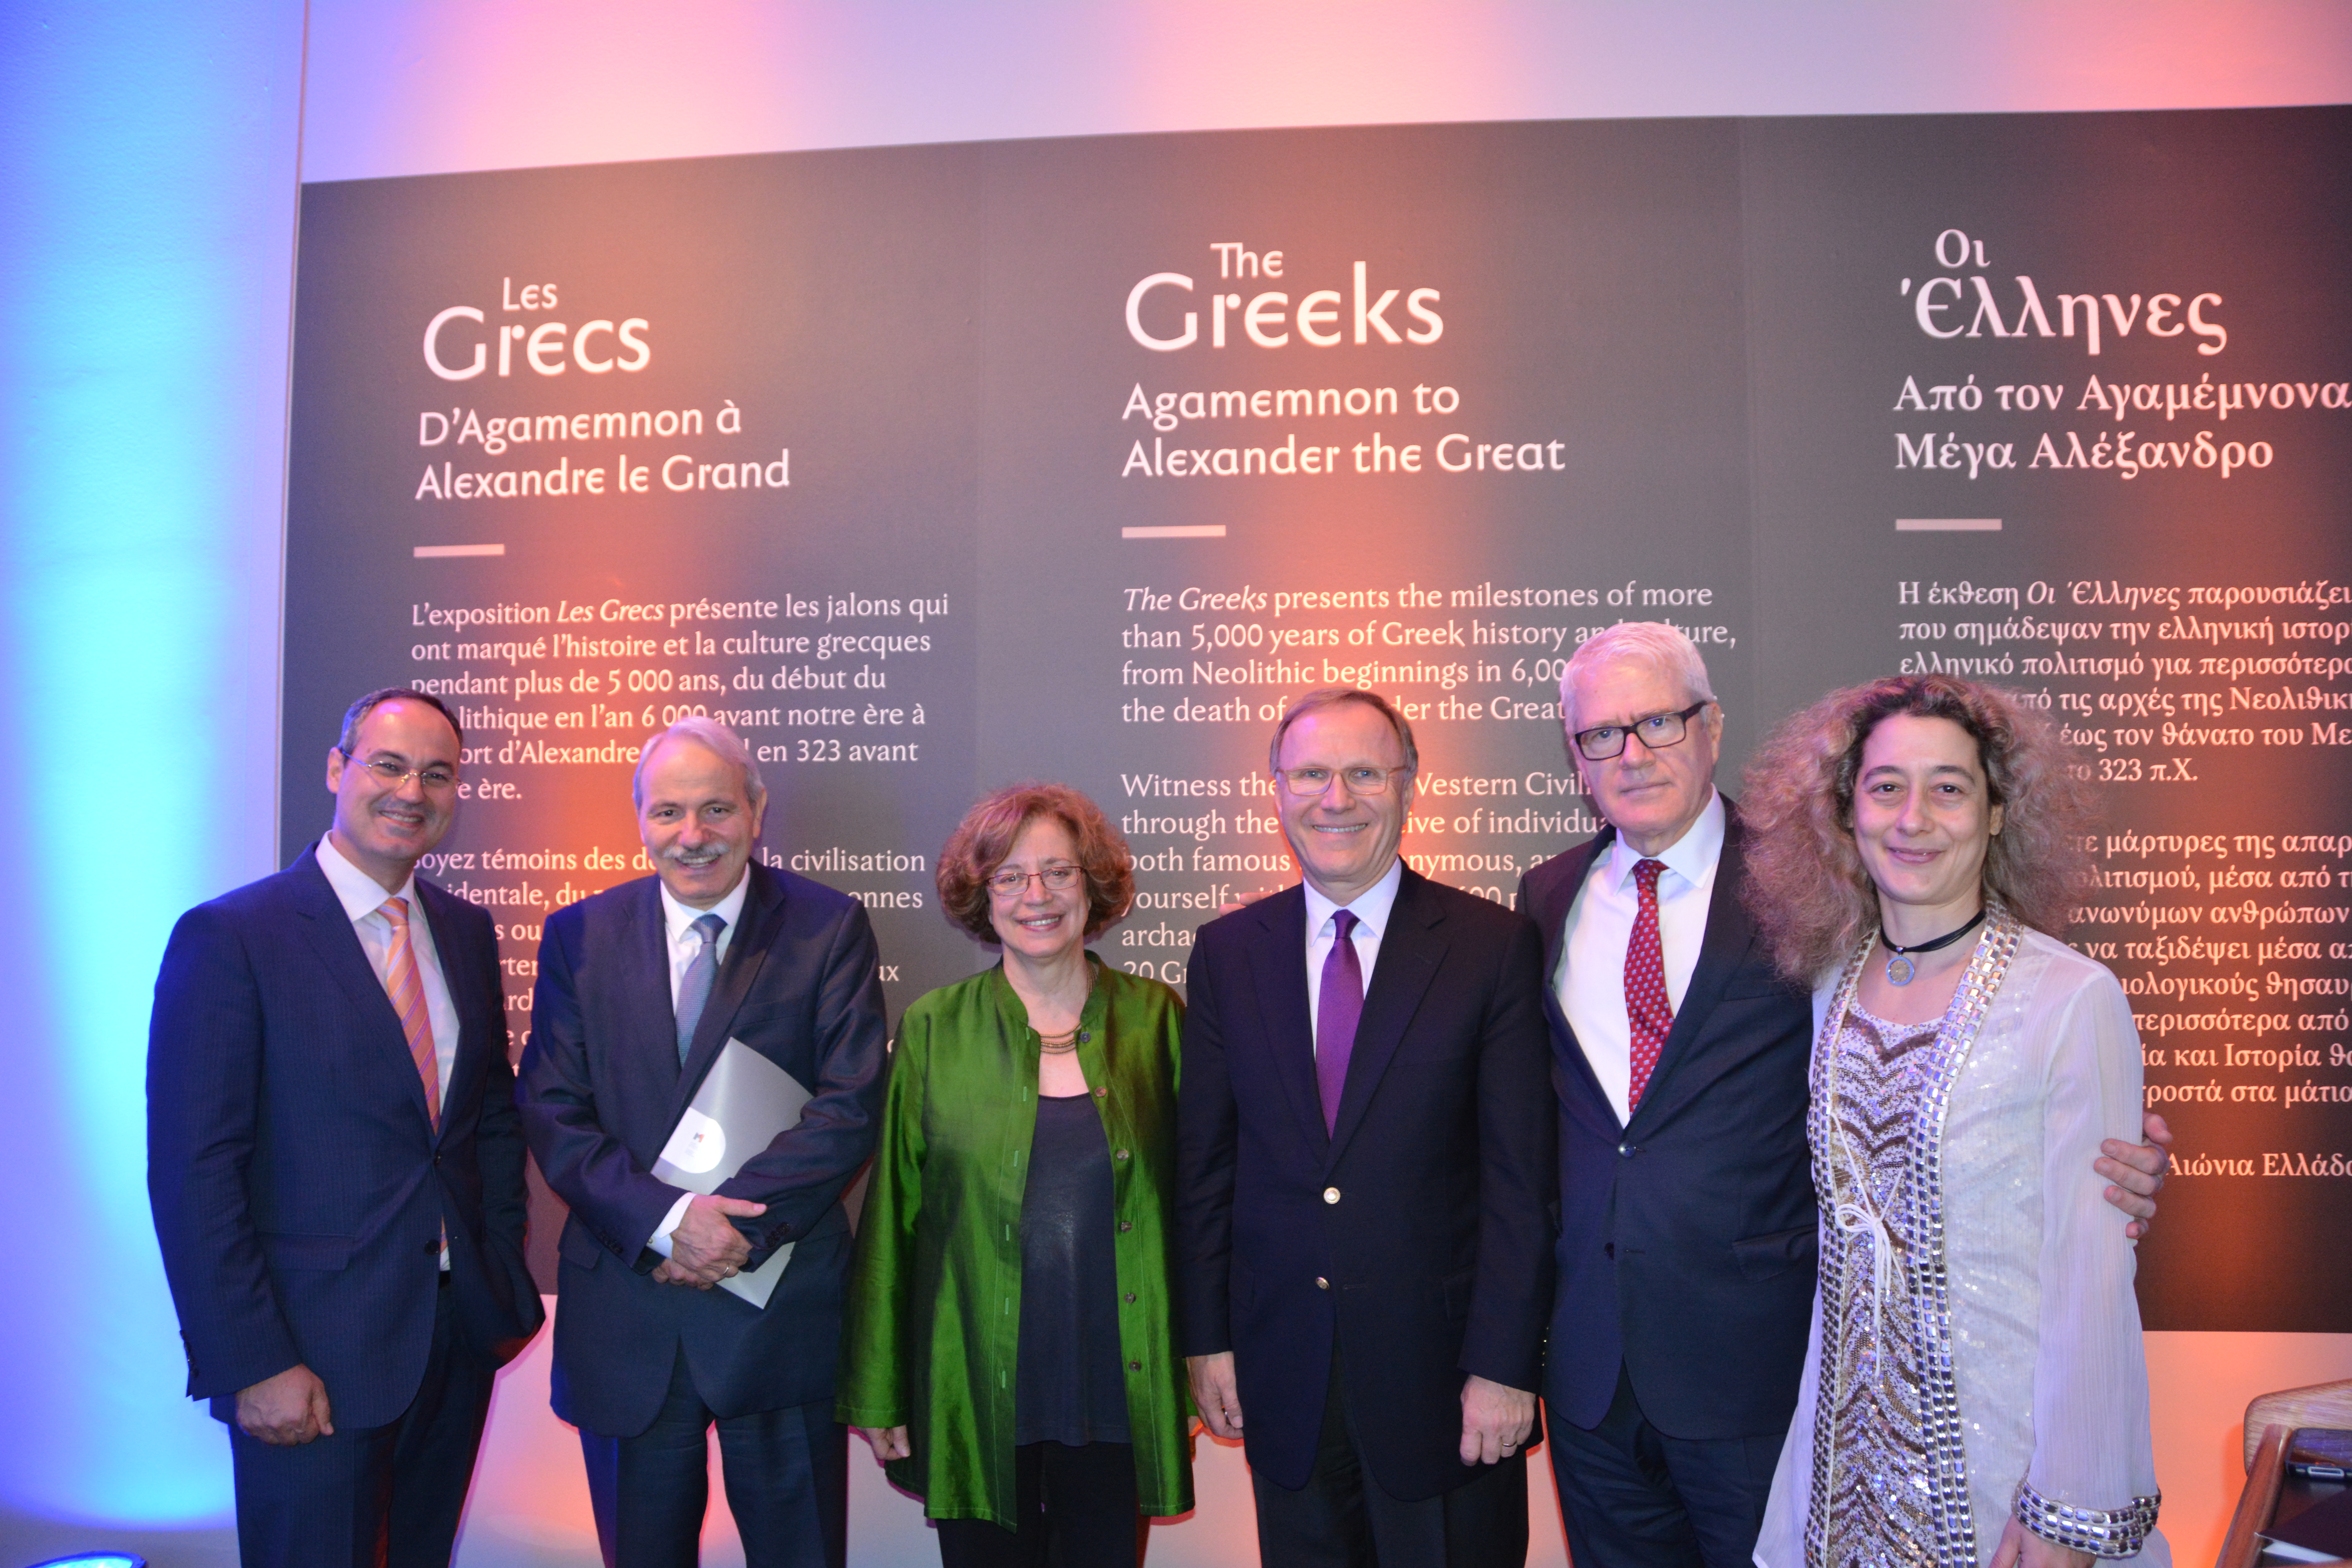 Θρίαμβος επισκεψιμότητας της έκθεσης των ελλήνων στον Καναδά